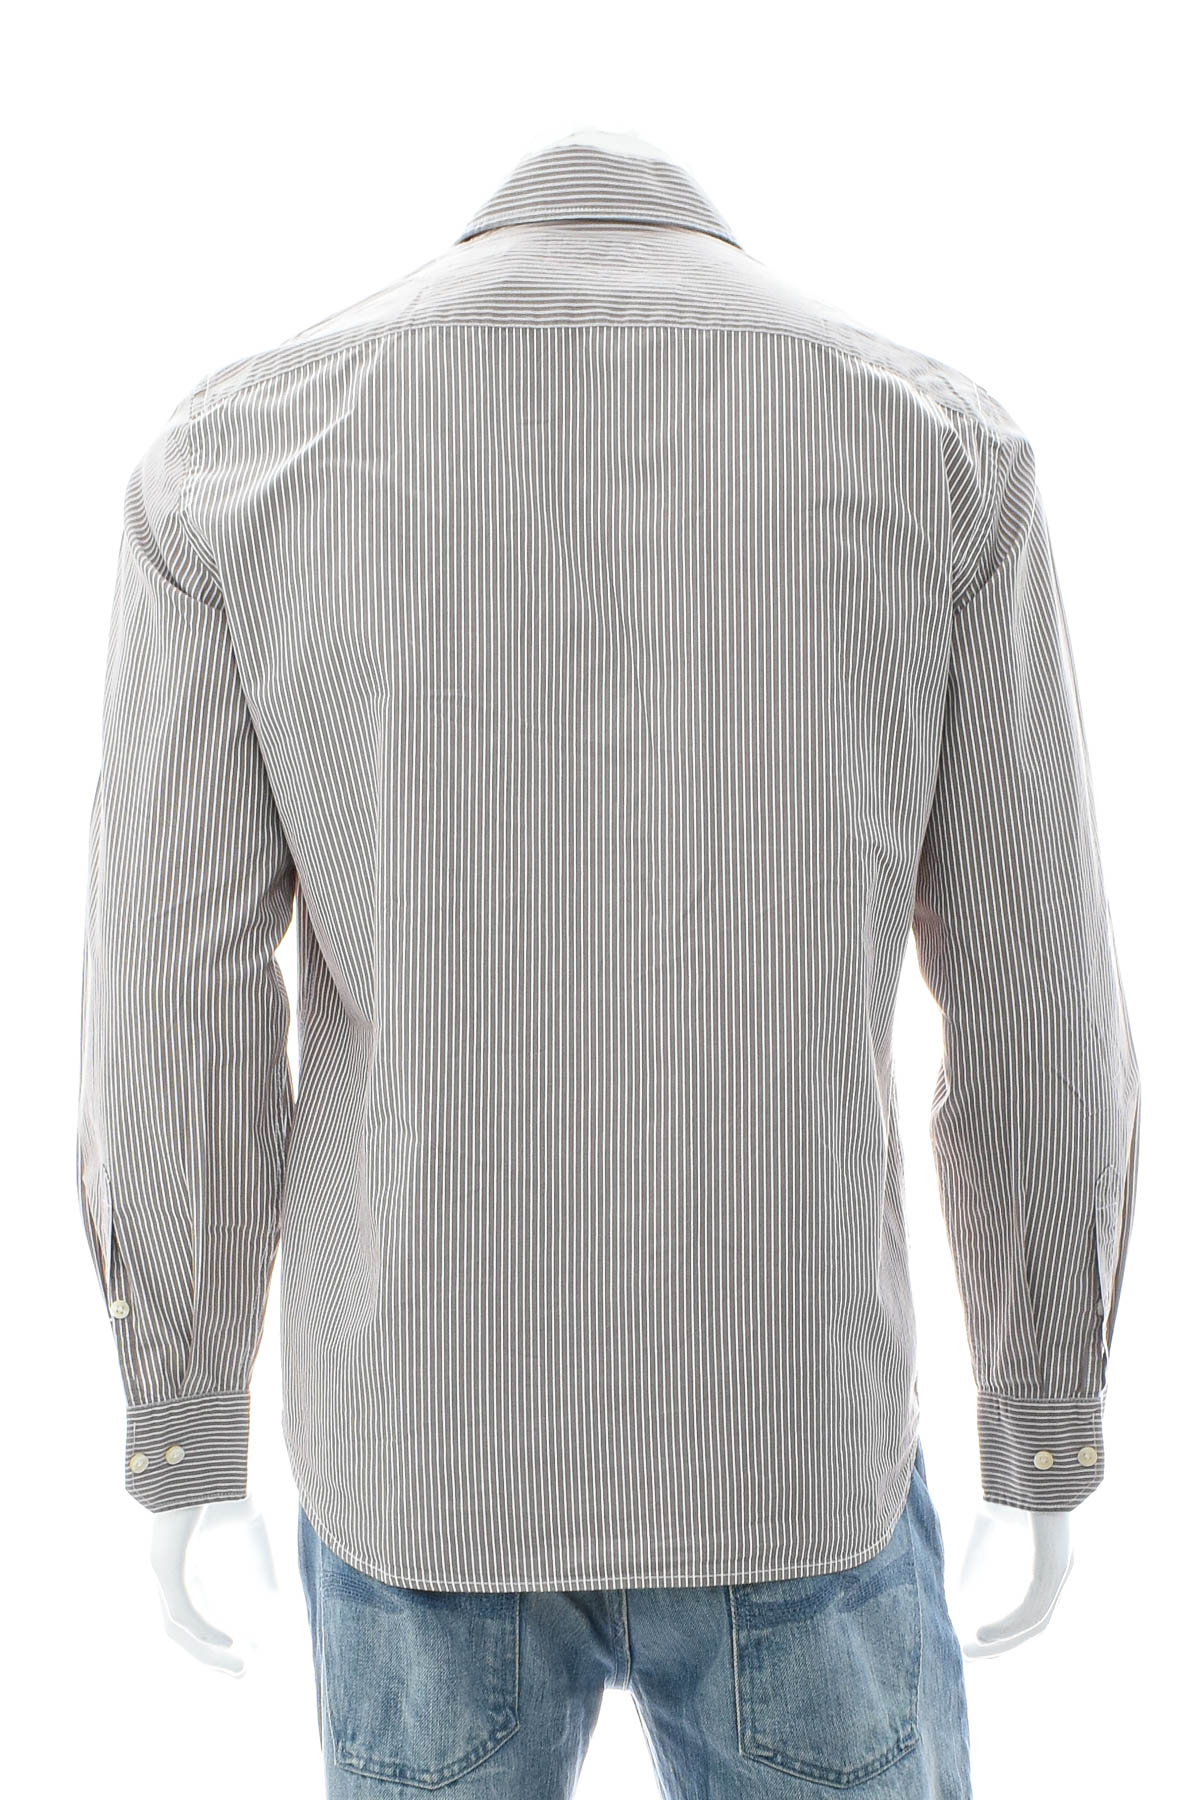 Men's shirt - Marc O' Polo - 1